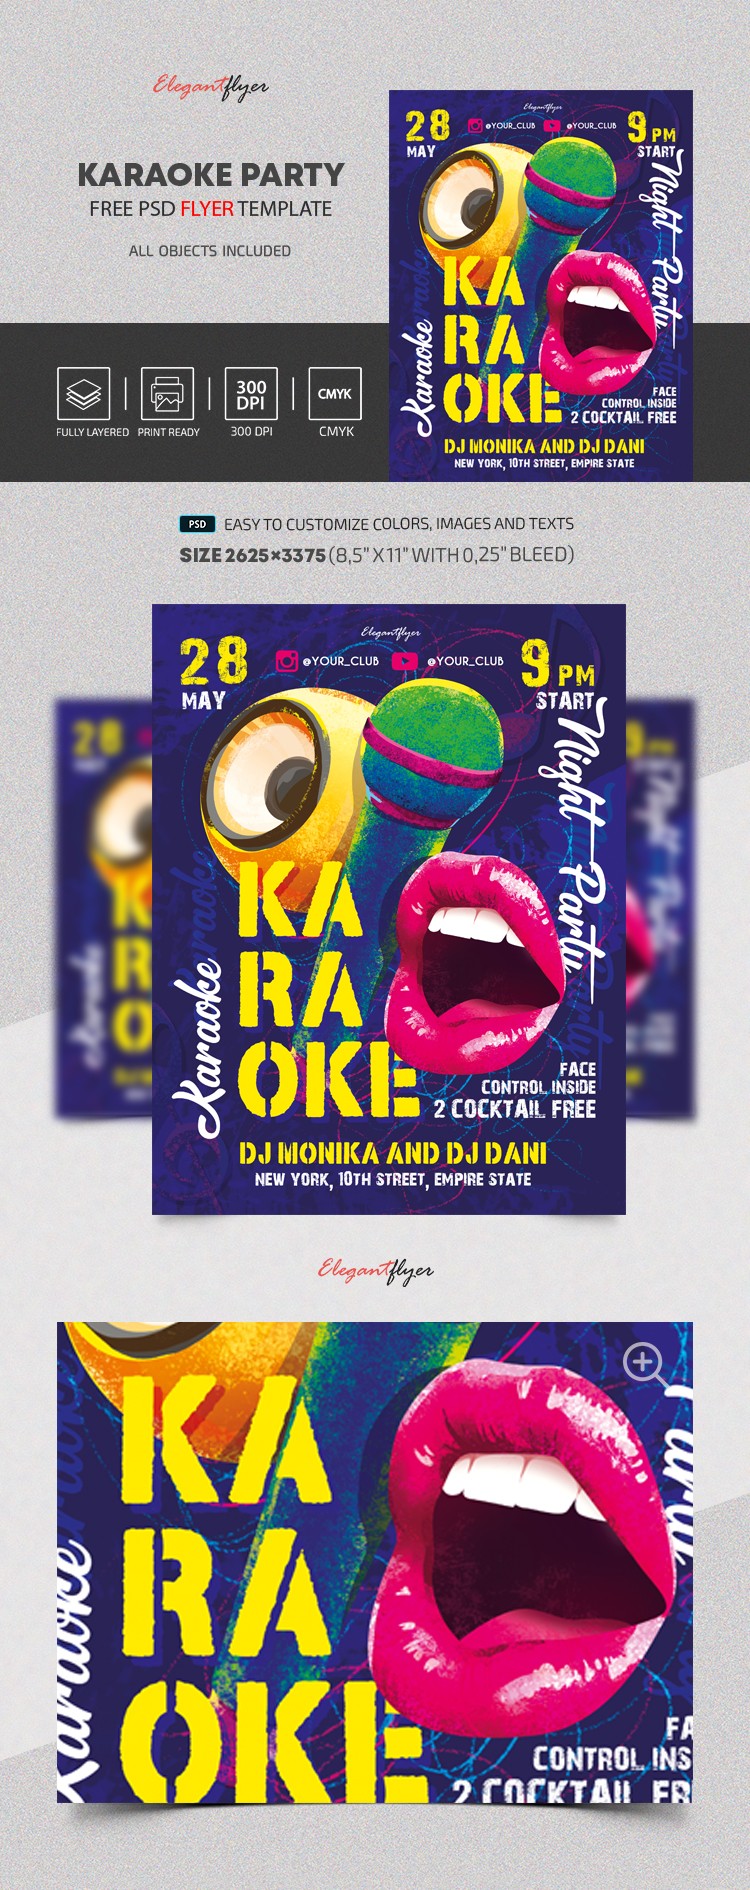 Karaoke Party Flyer by ElegantFlyer